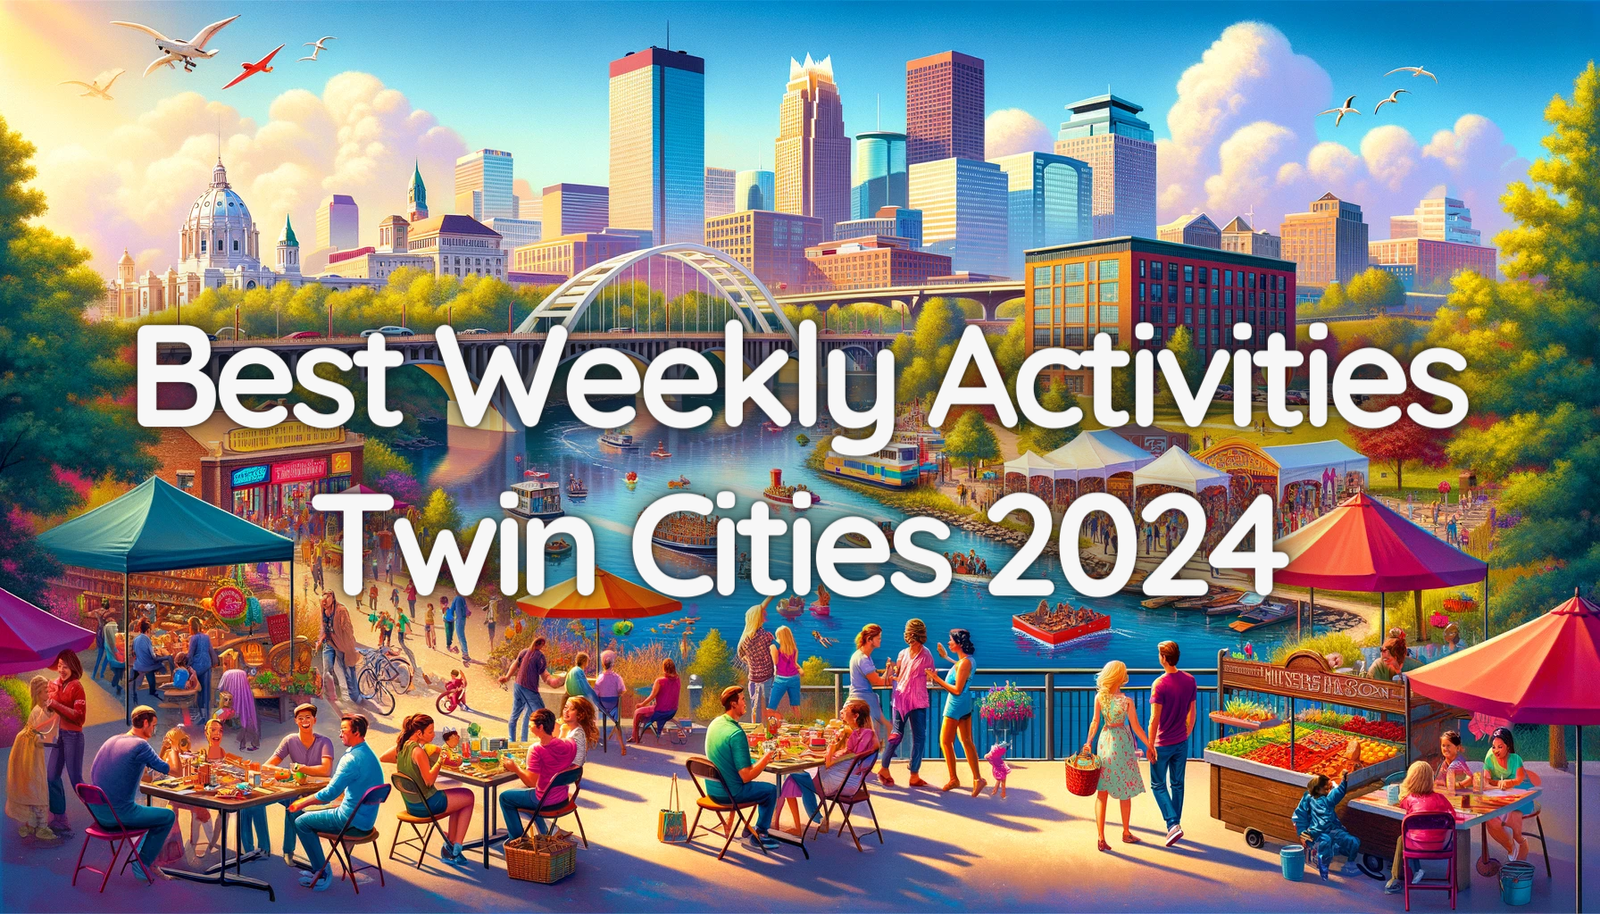 Best Weekly Activities in the Twin Cities 2024